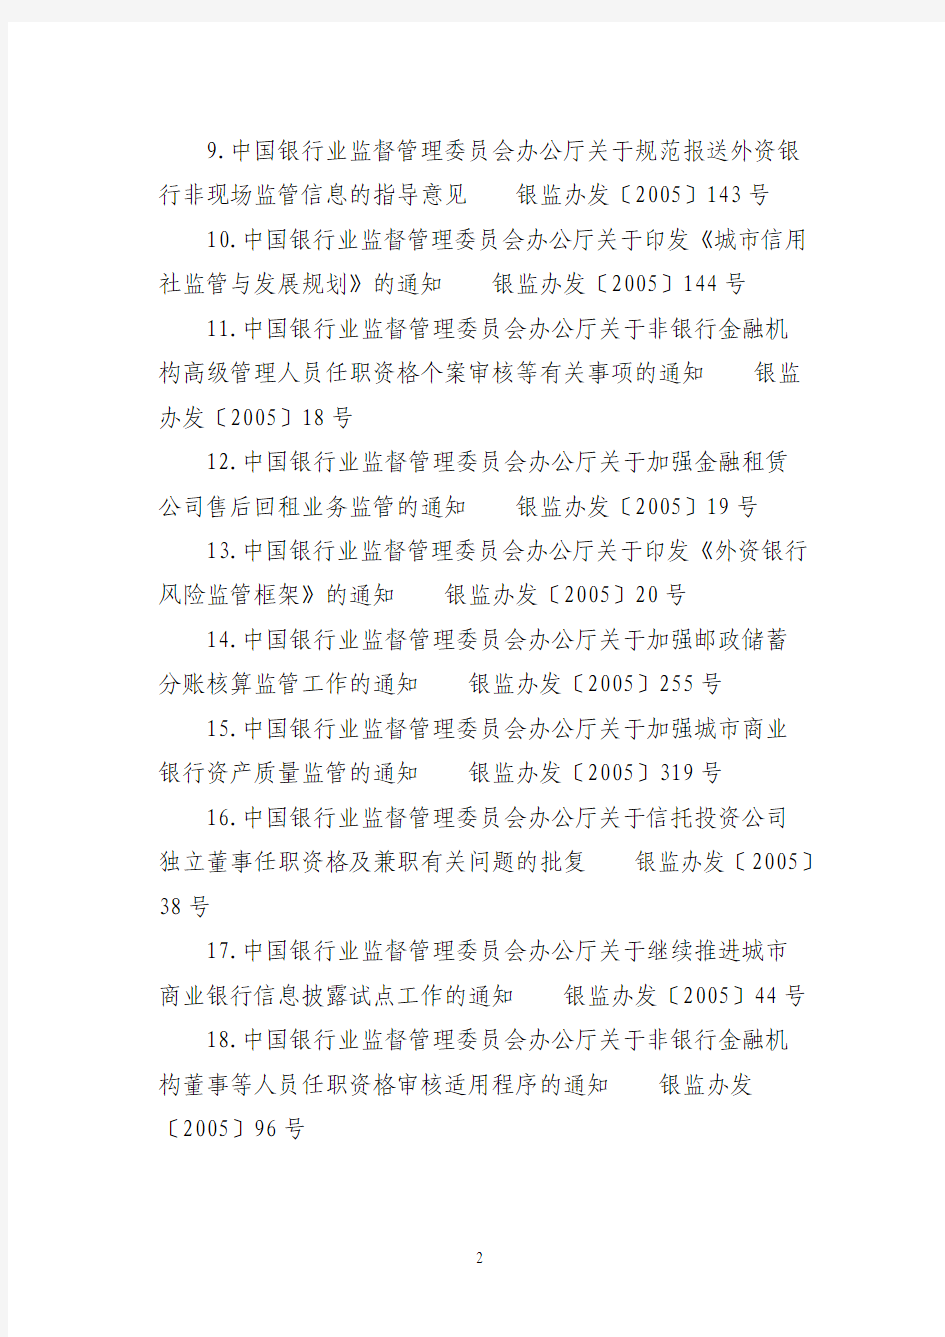 由中国银监会发布,废止的规范性文件82件